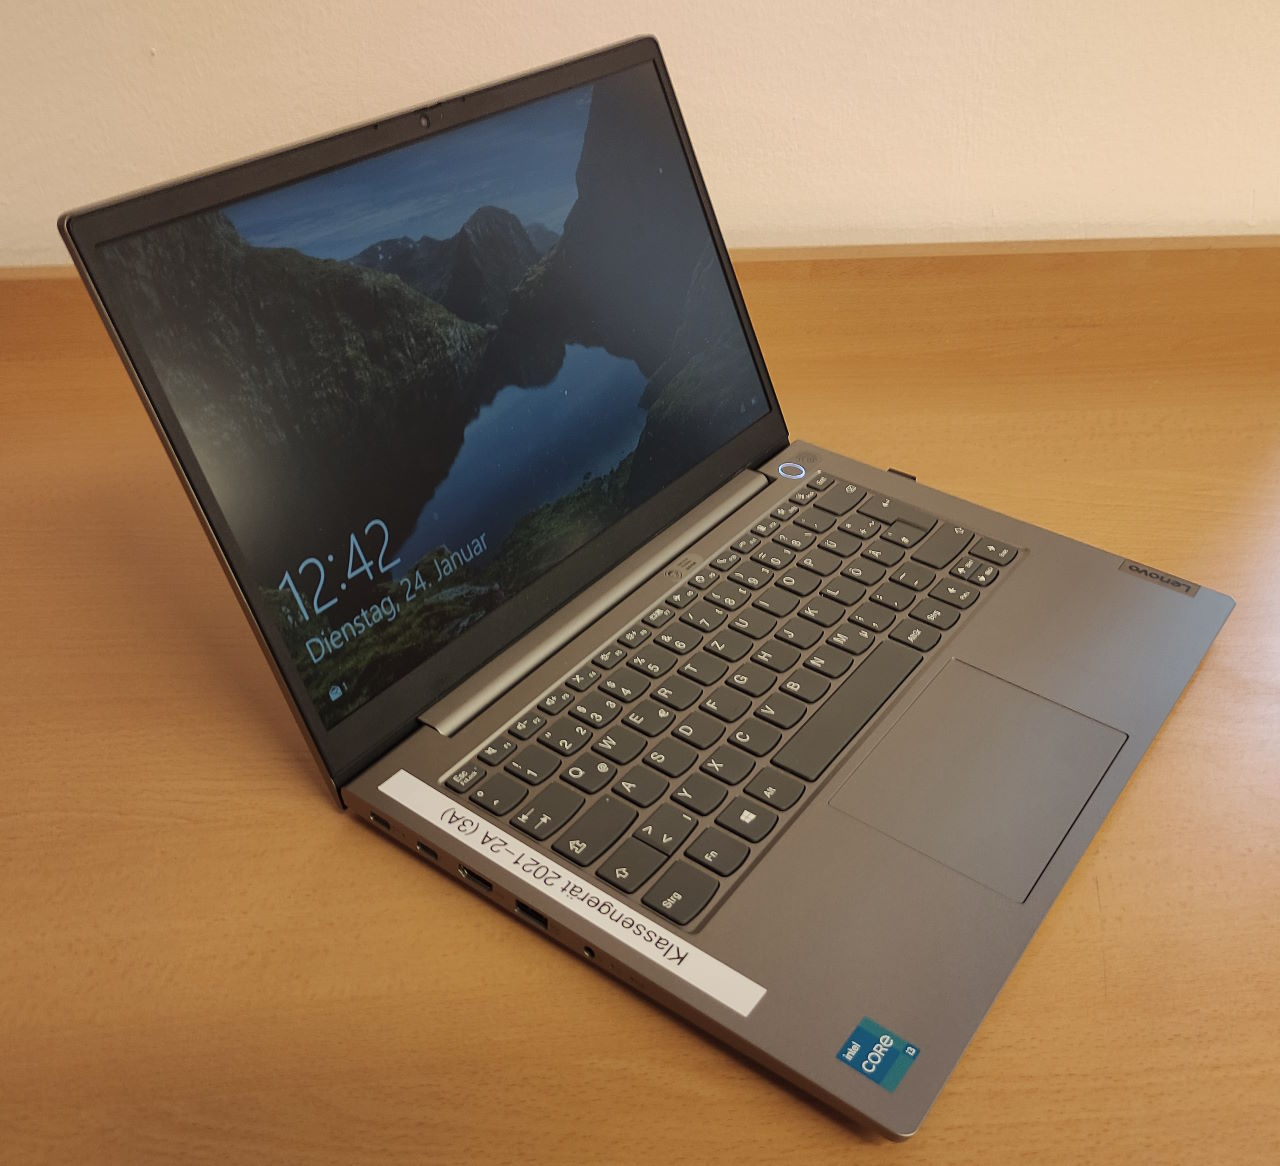 Bild eines geöffneten grau-silbernen Lenovo Laptops.